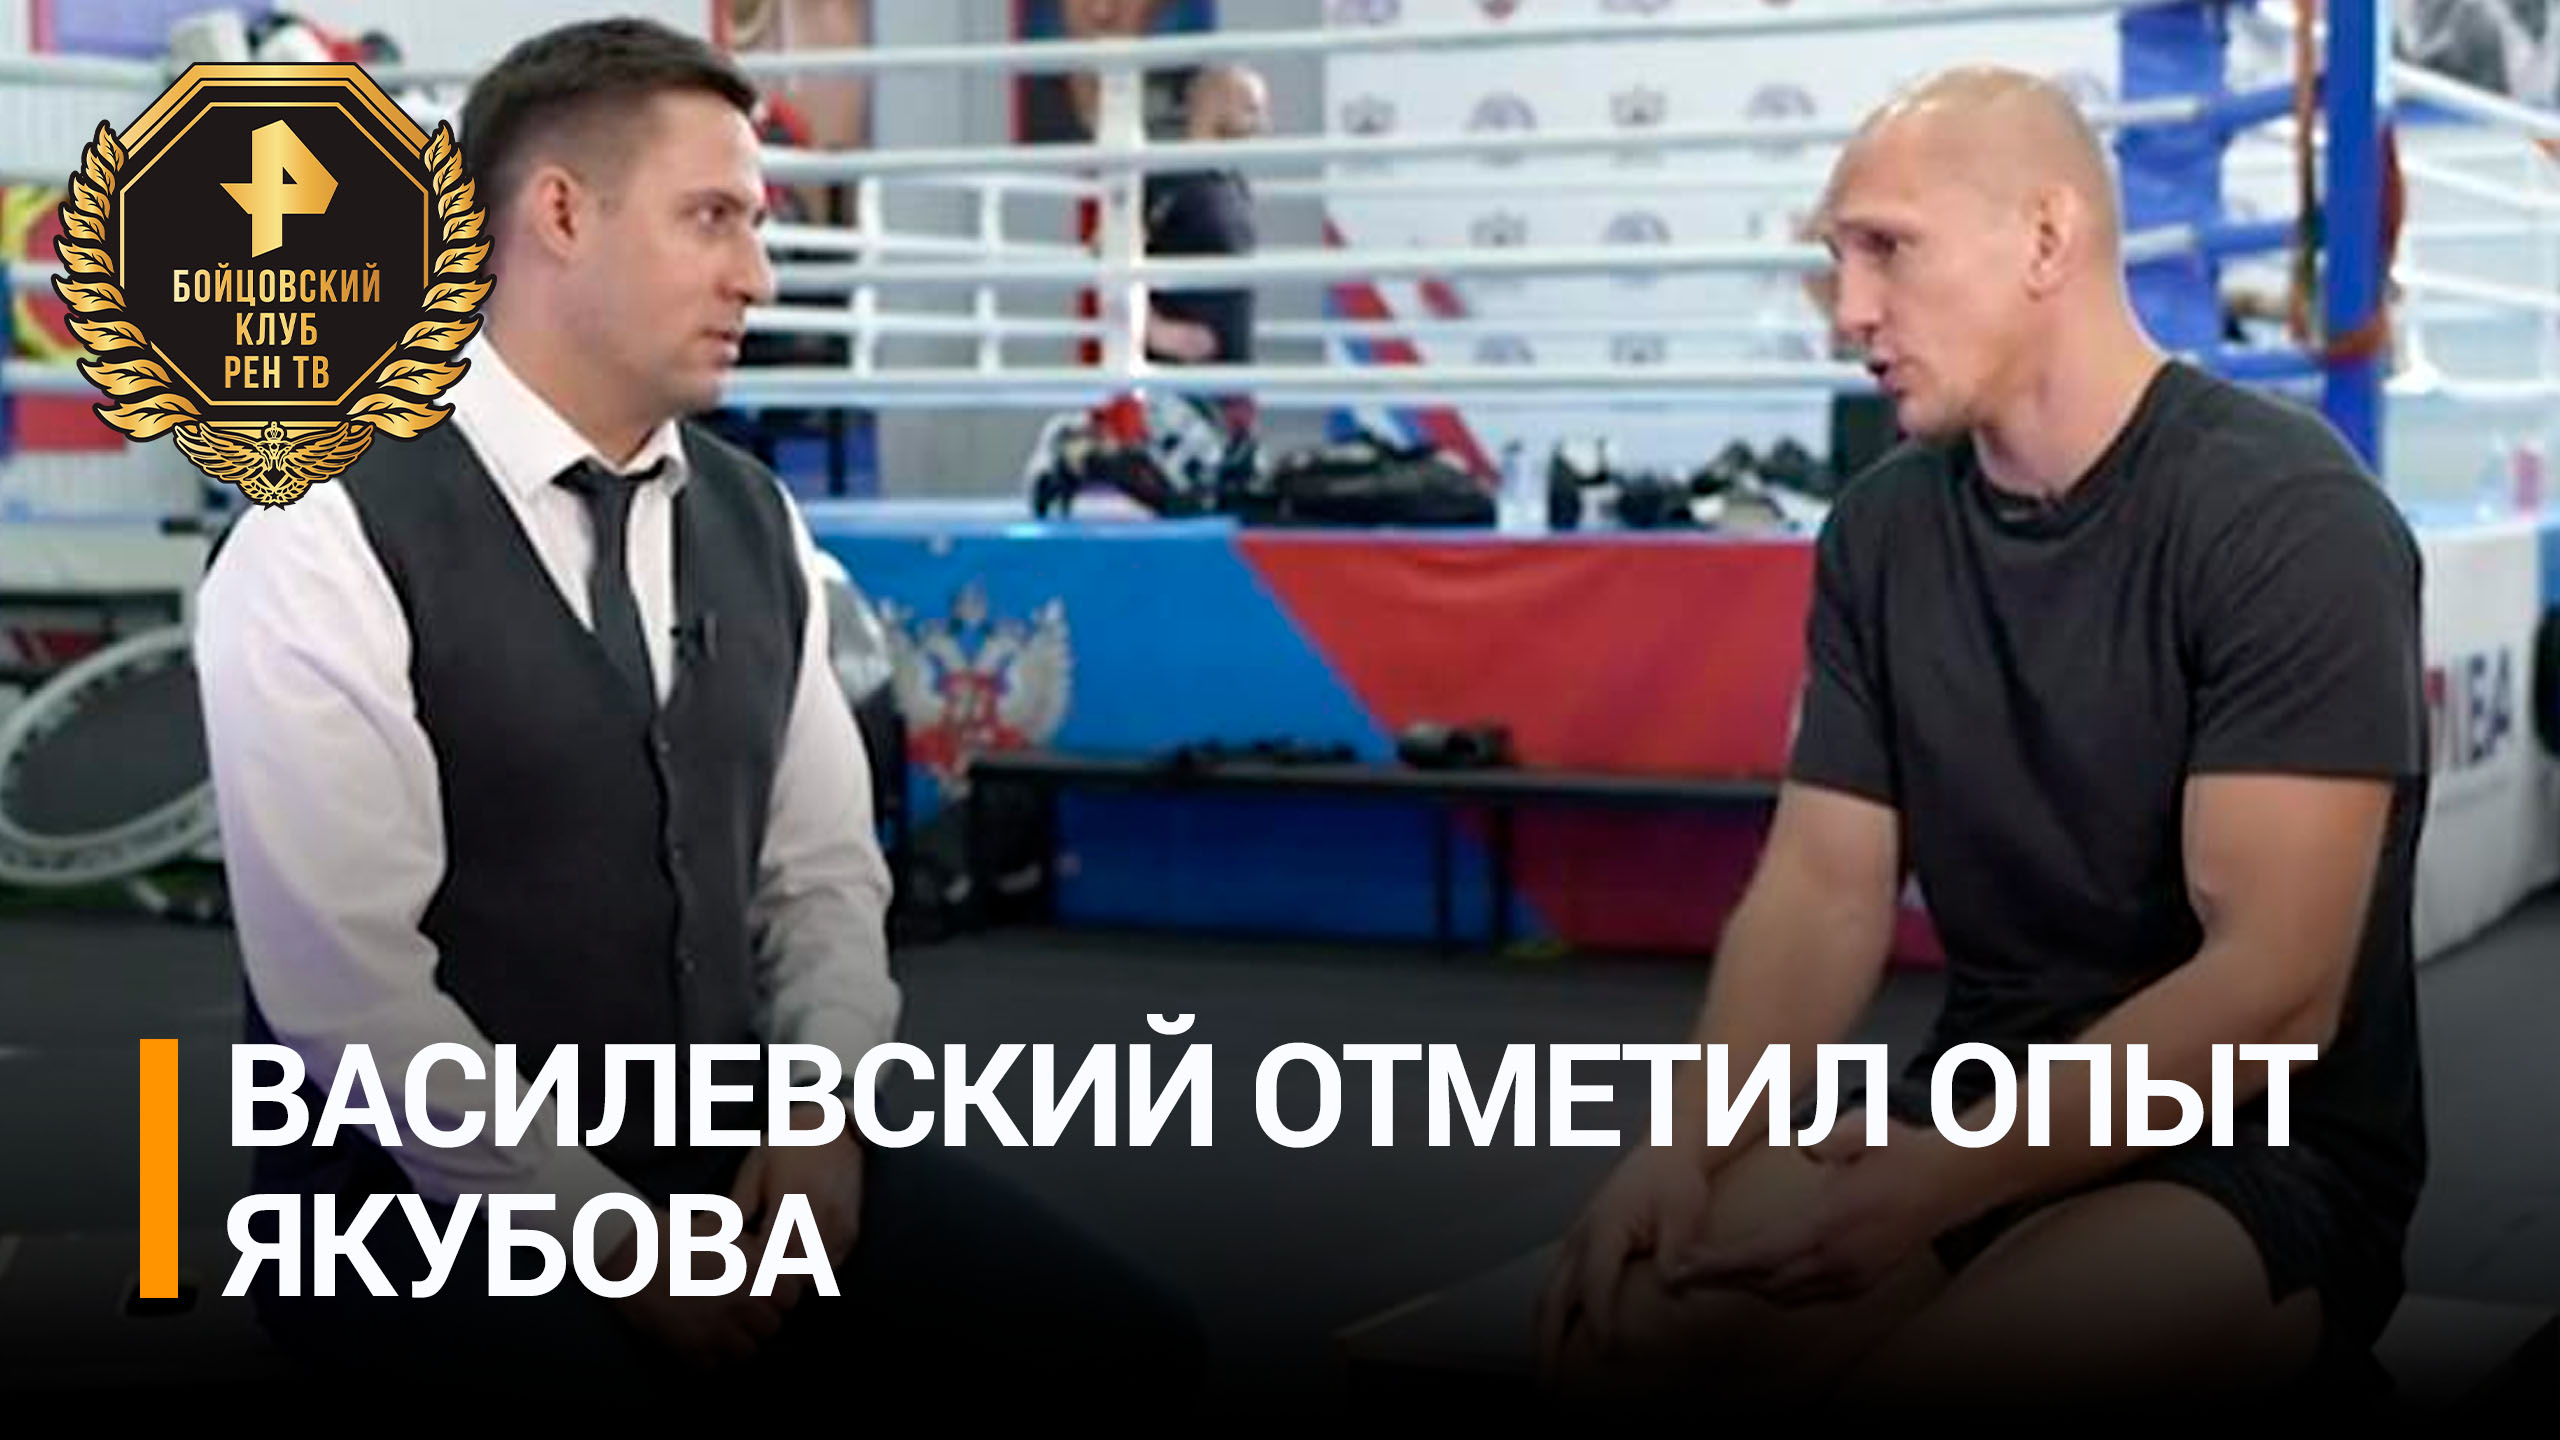 Боец MMA Василевский заявил, что у него нет недооценки Якубова / Бойцовский клуб РЕН ТВ